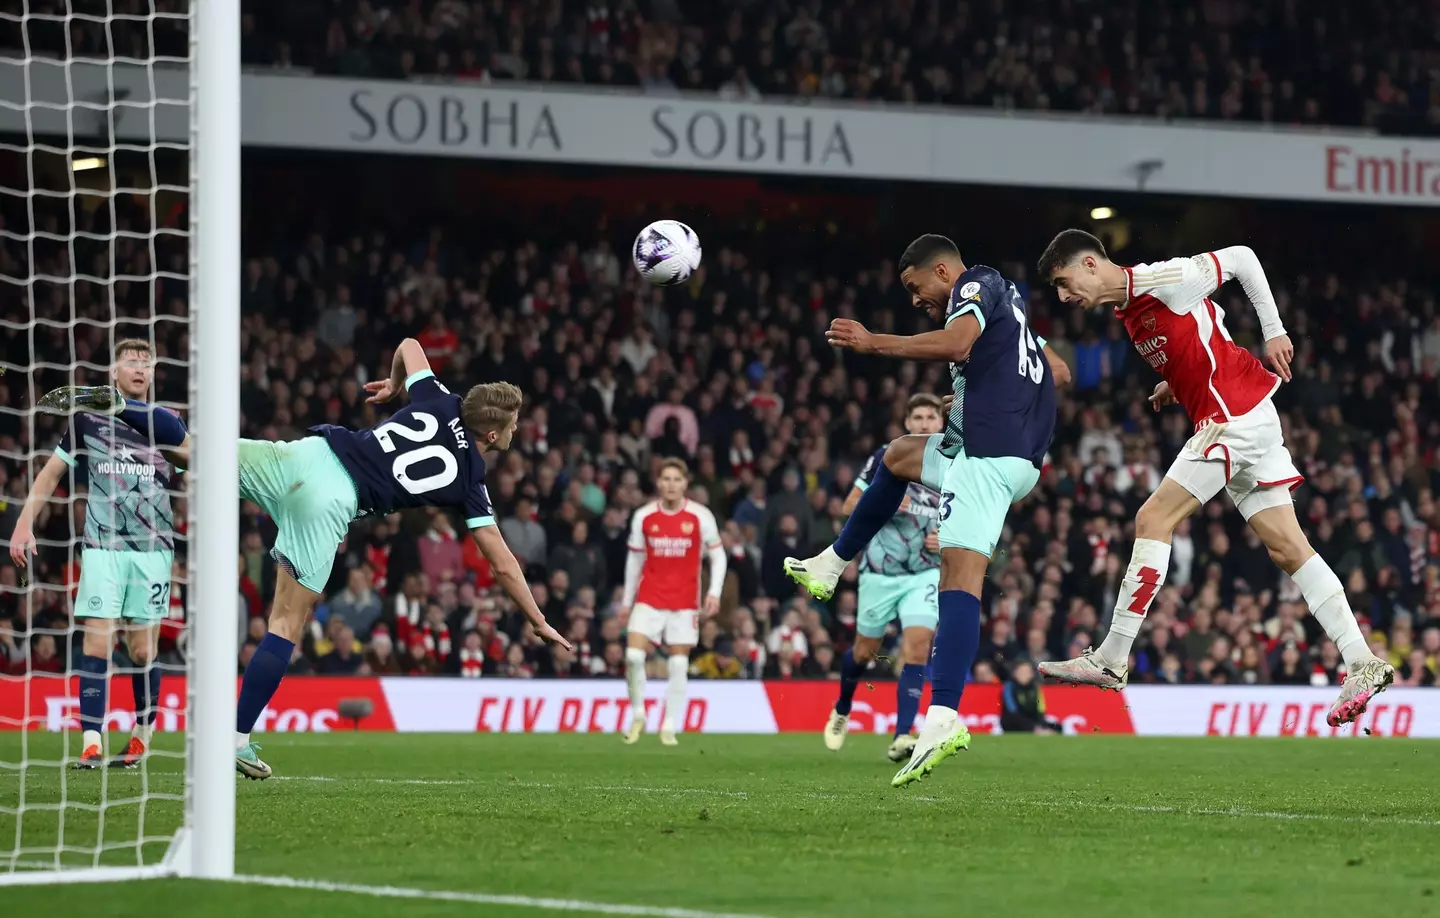 Kai Havertz scored the winning goal for Arsenal against Brentford. (